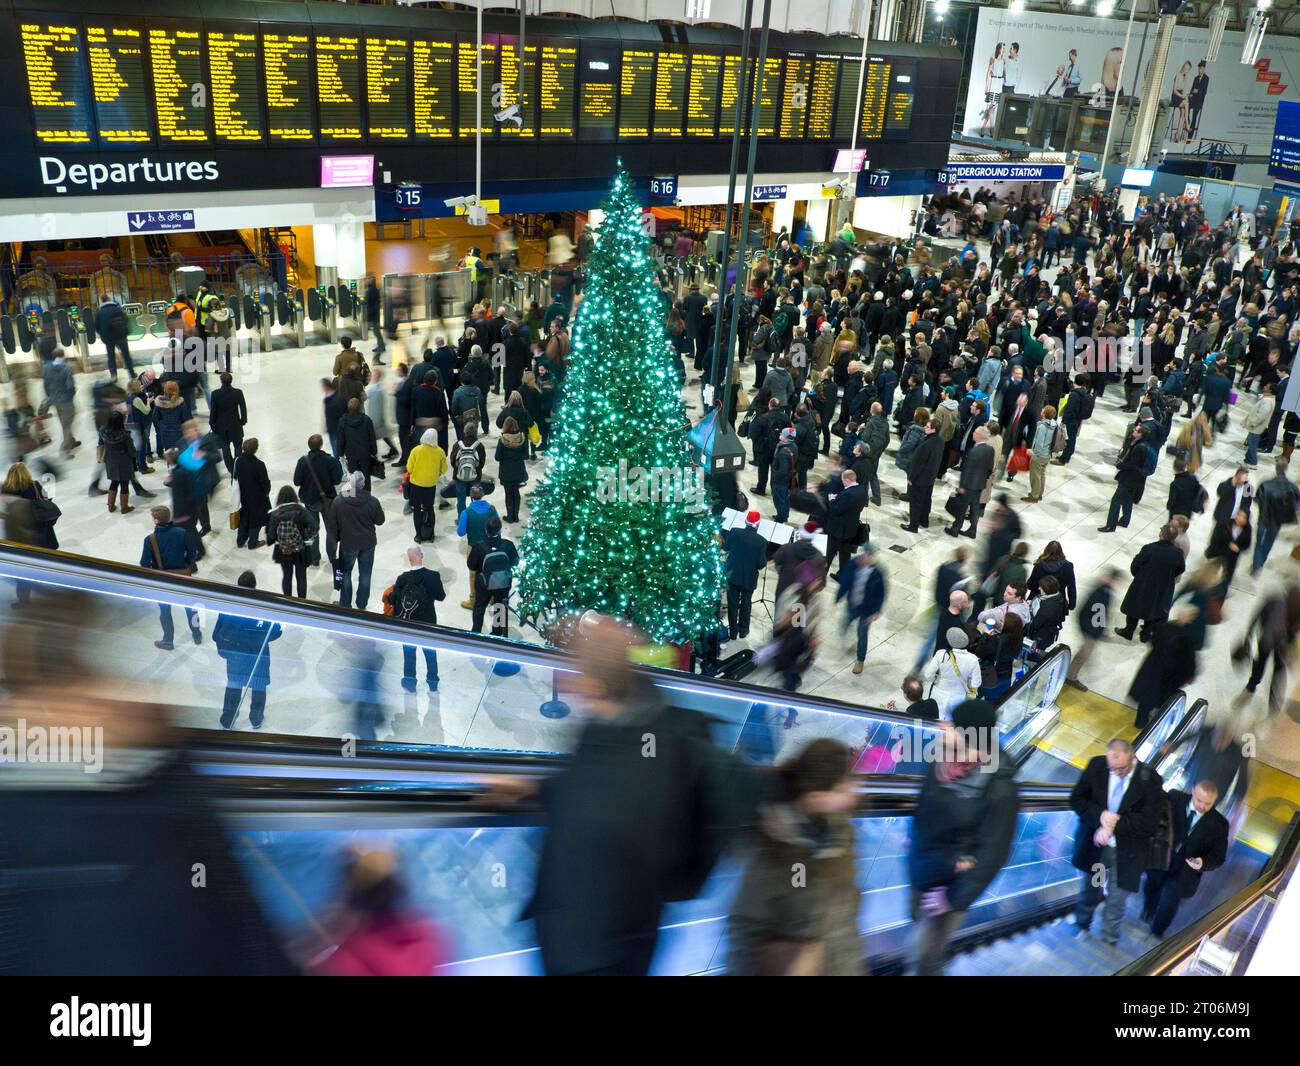 WEIHNACHTSREISE Waterloo Station Halle mit Weihnachtsbaum, Massen von Pendlern und Familien, die sich die Abfahrtsinformationsbildschirme ansehen, Heimfahrt für die Winterweihnachtszeit festliche Reise Waterloo Station London UK Stockfoto